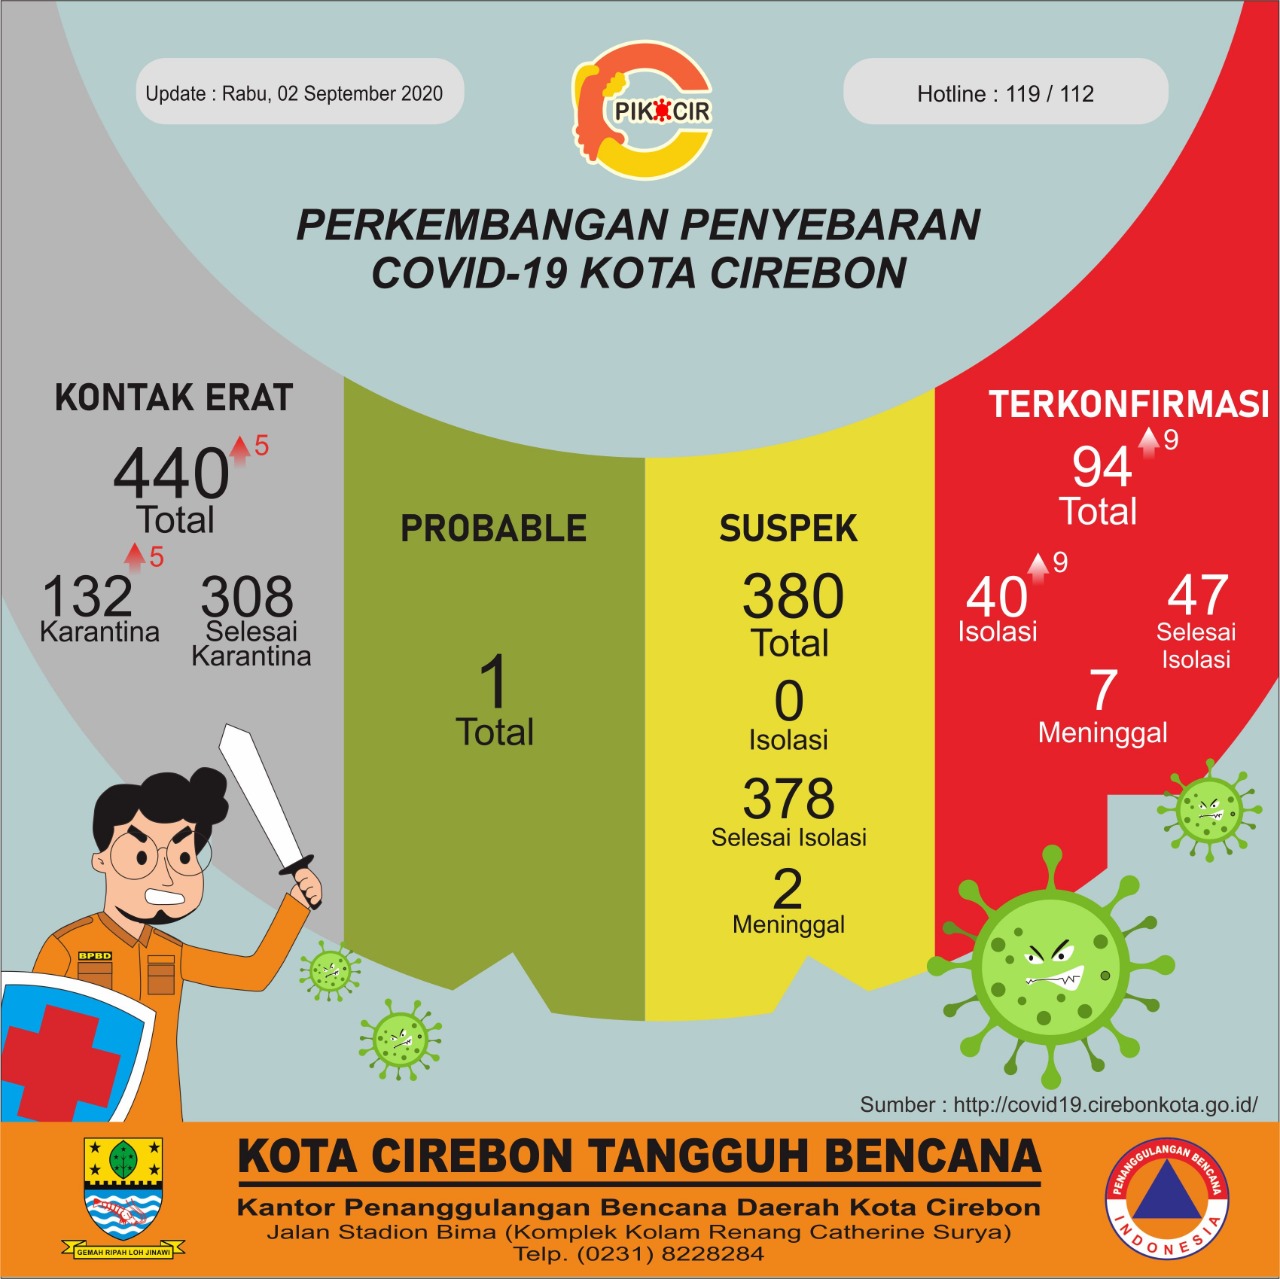 Masuk Risiko Sedang Penyebaran Covid-19, Kota Cirebon Peringkat Ketiga di Jabar